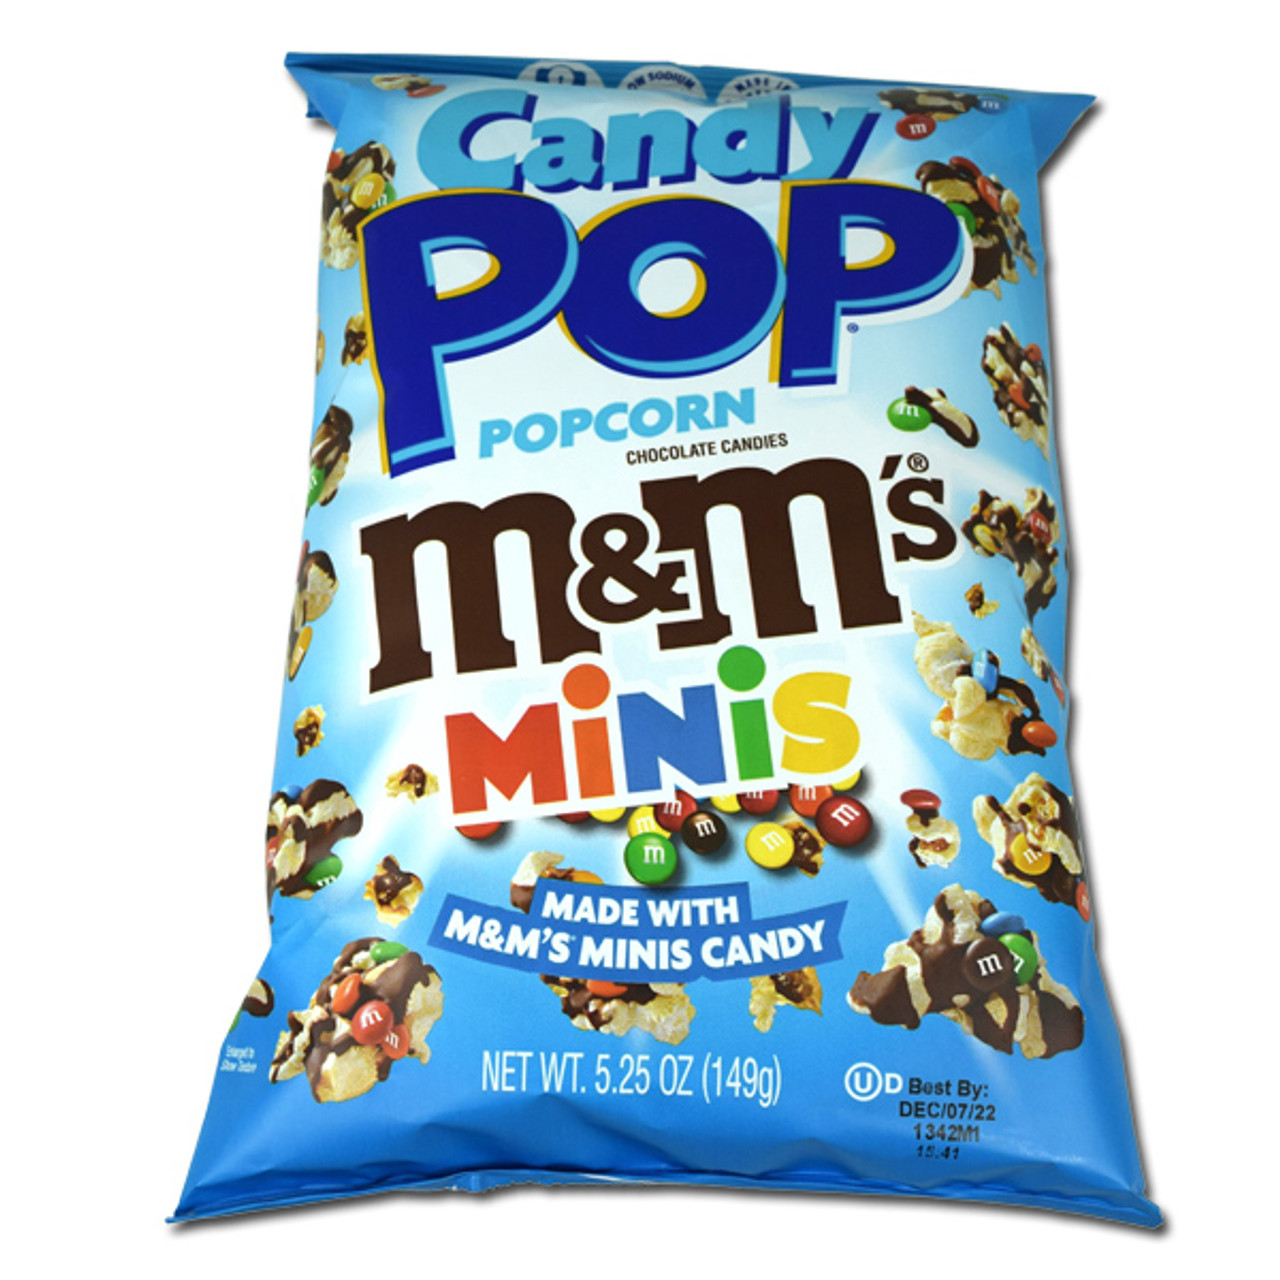 Mini Bag M Candy